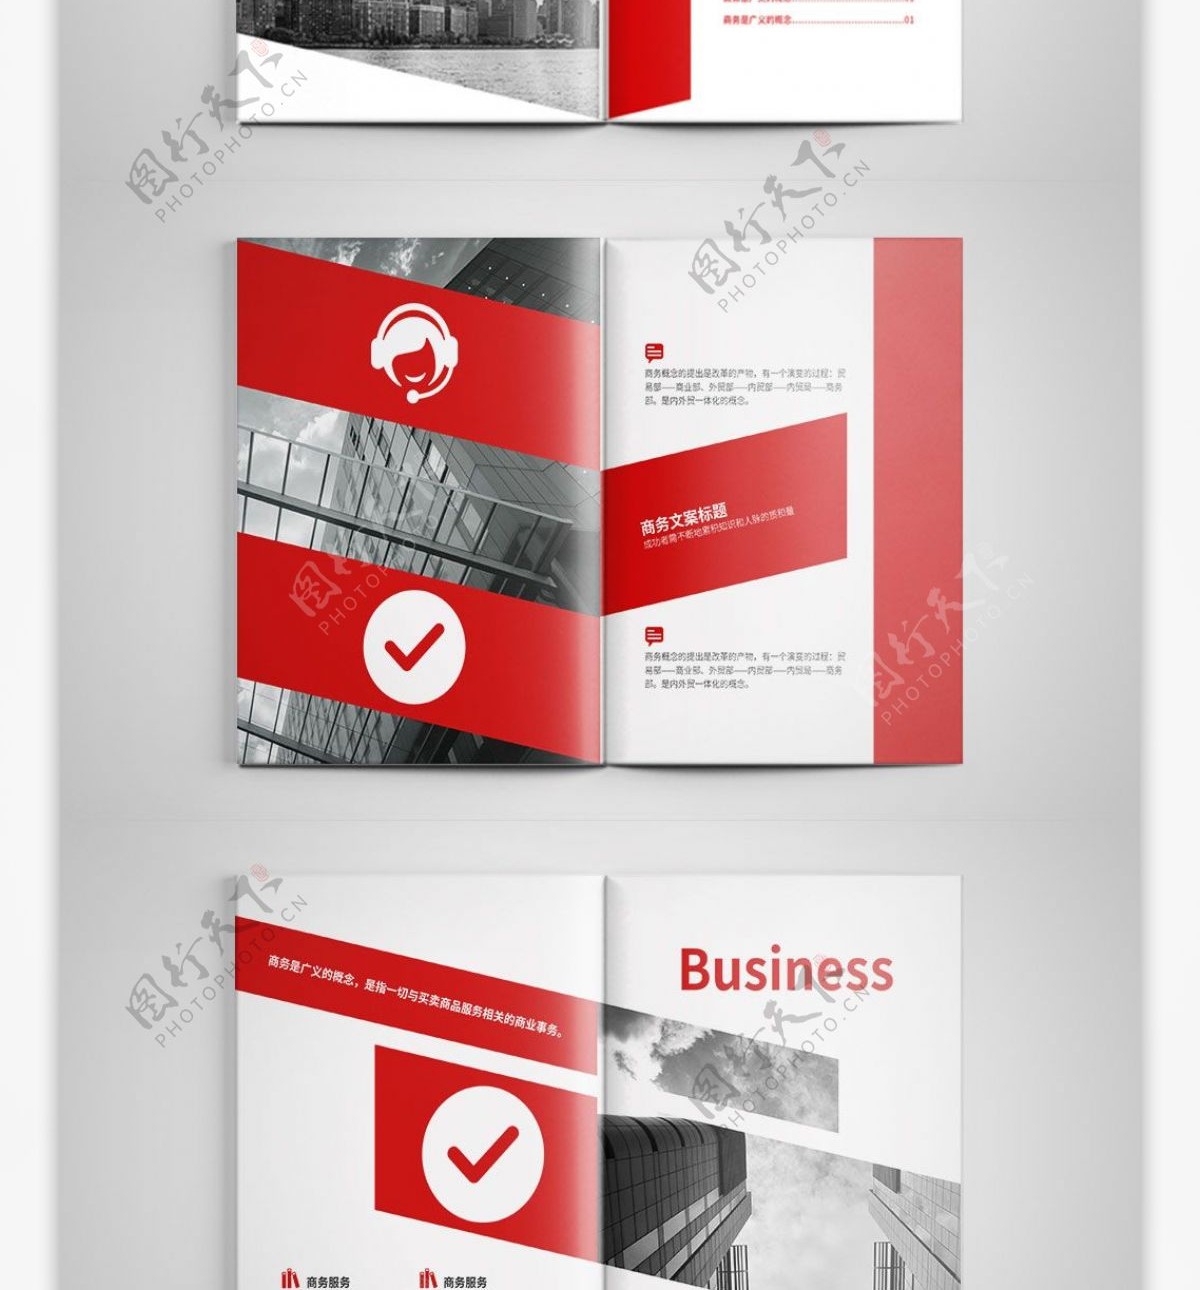 创意红色商务画册设计PSD模板